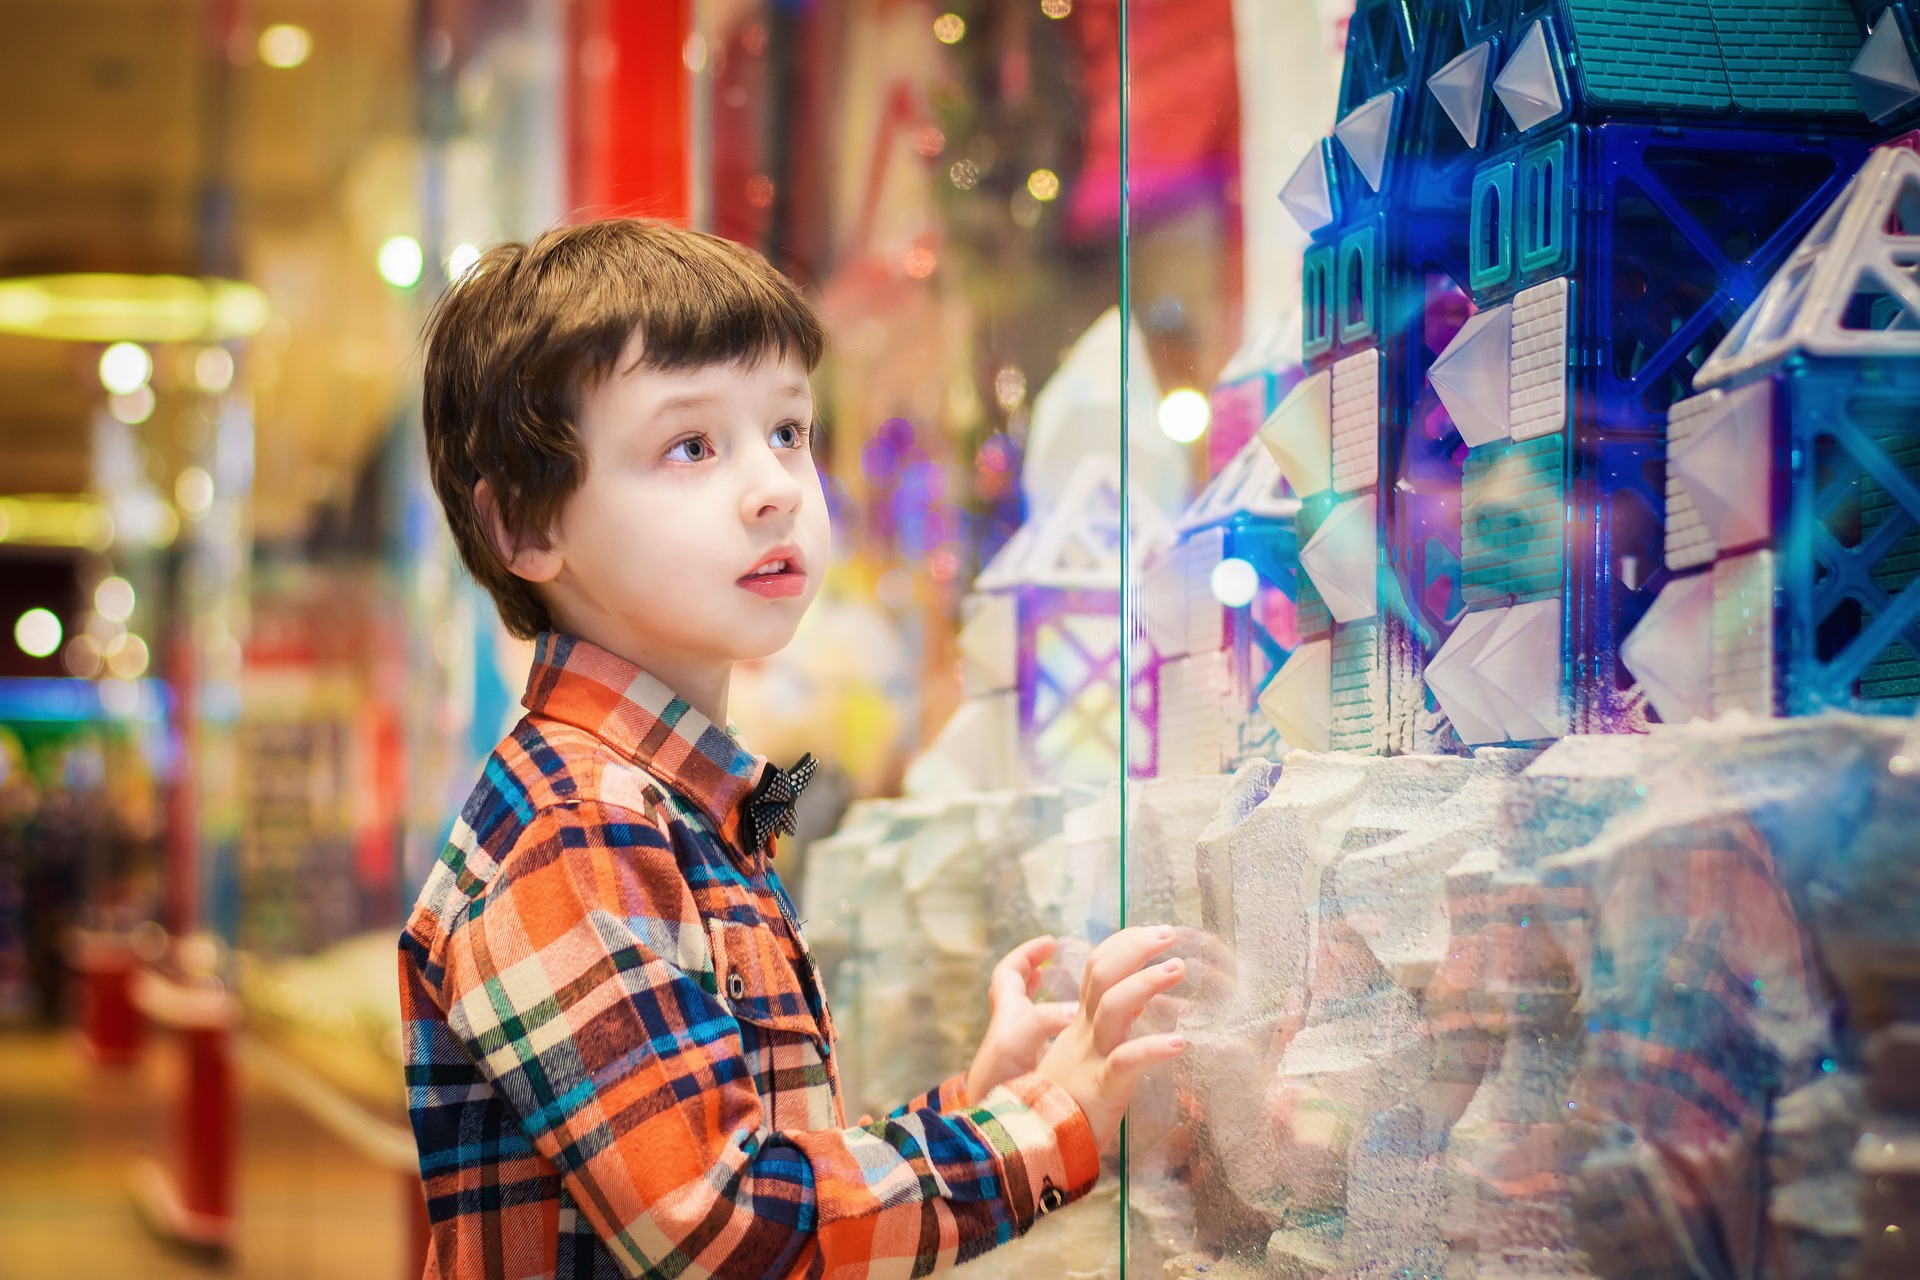 IRCenter: Dzieci mają istotny wpływ na decyzje zakupowe rodziców